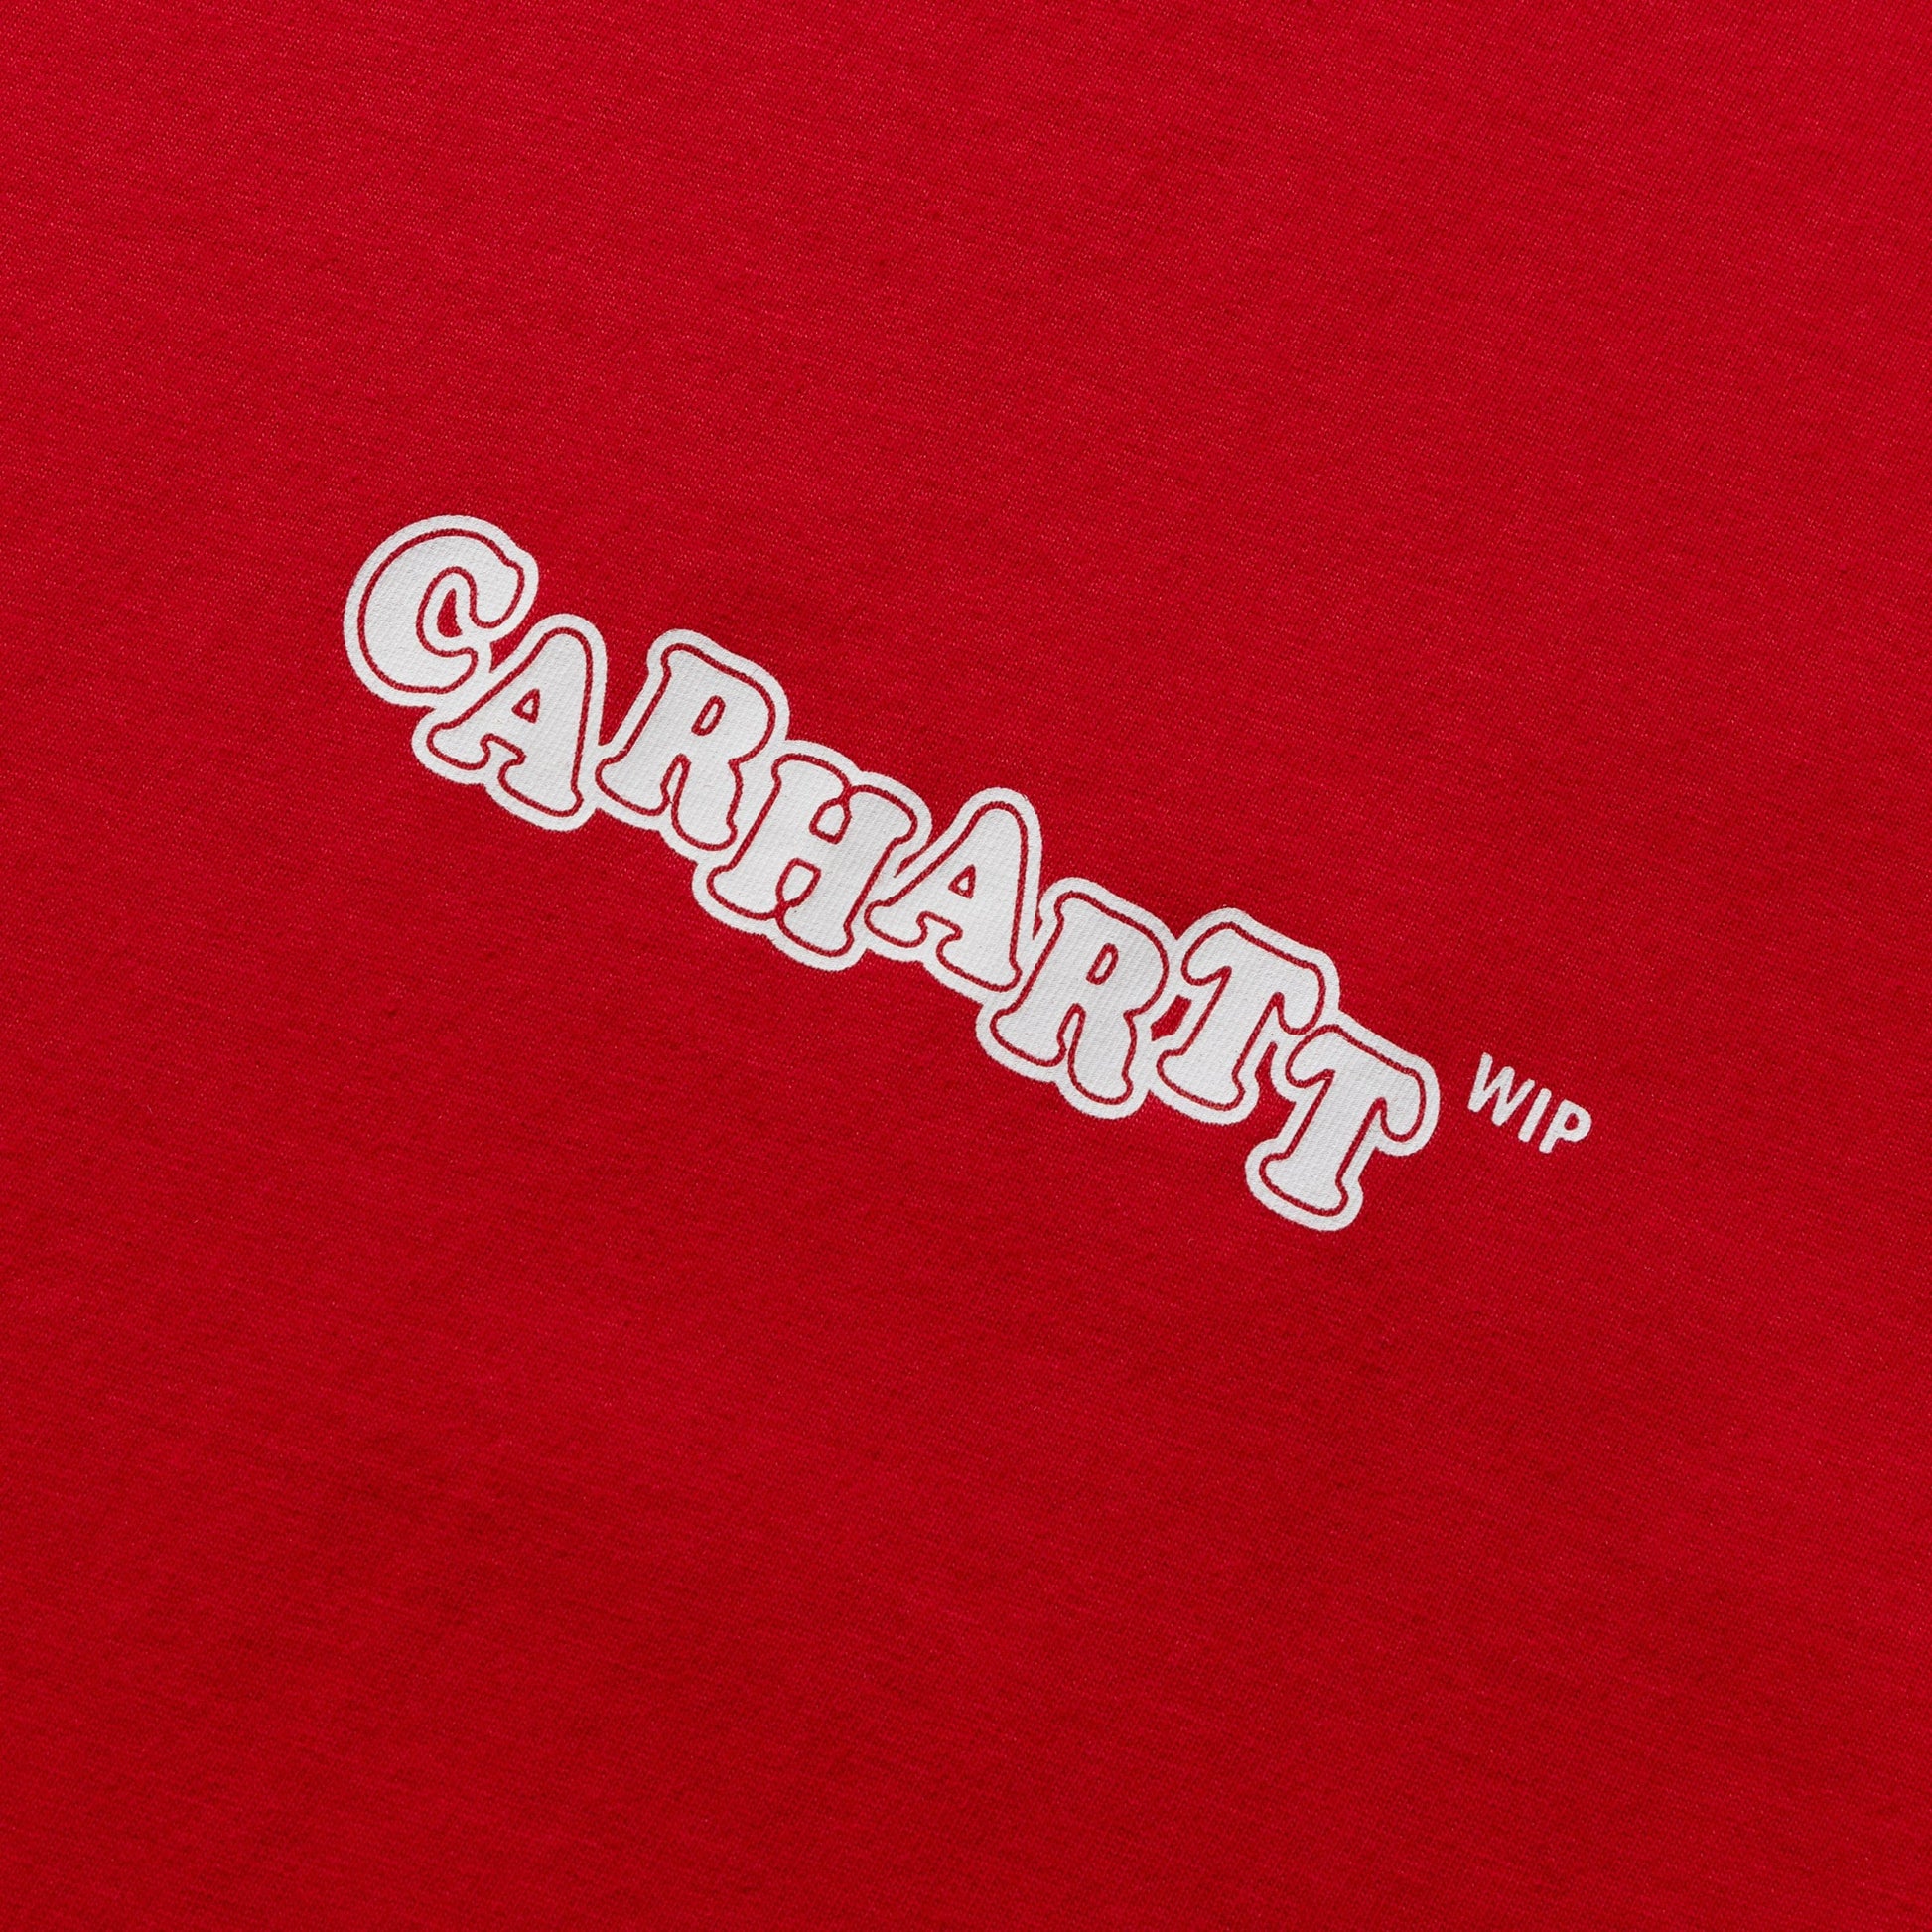 Carhartt WIP T-Shirts FAST FOOD T-SHIRT